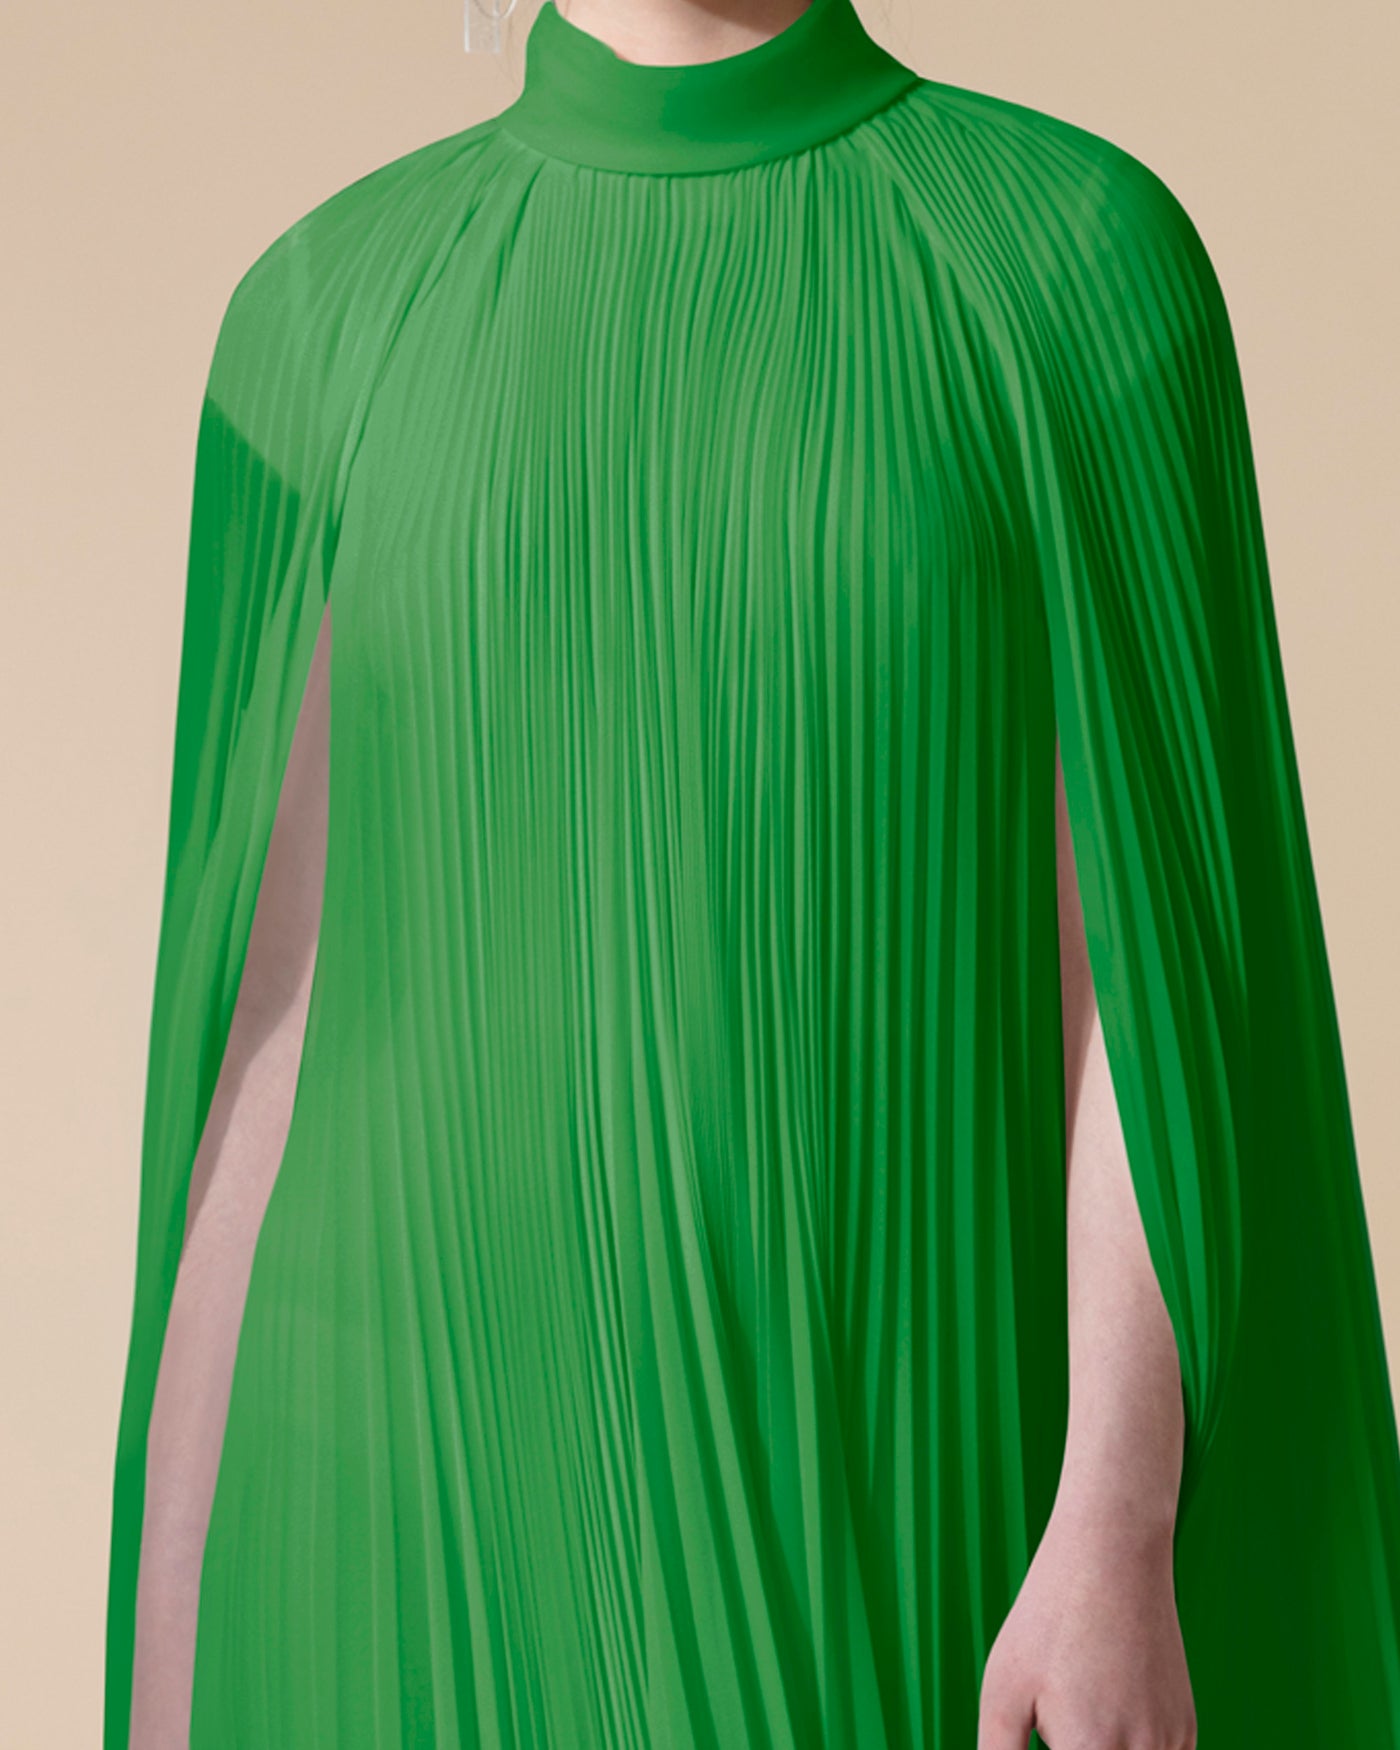 فستان اخضر بشكل كيب غير متساوي الطول